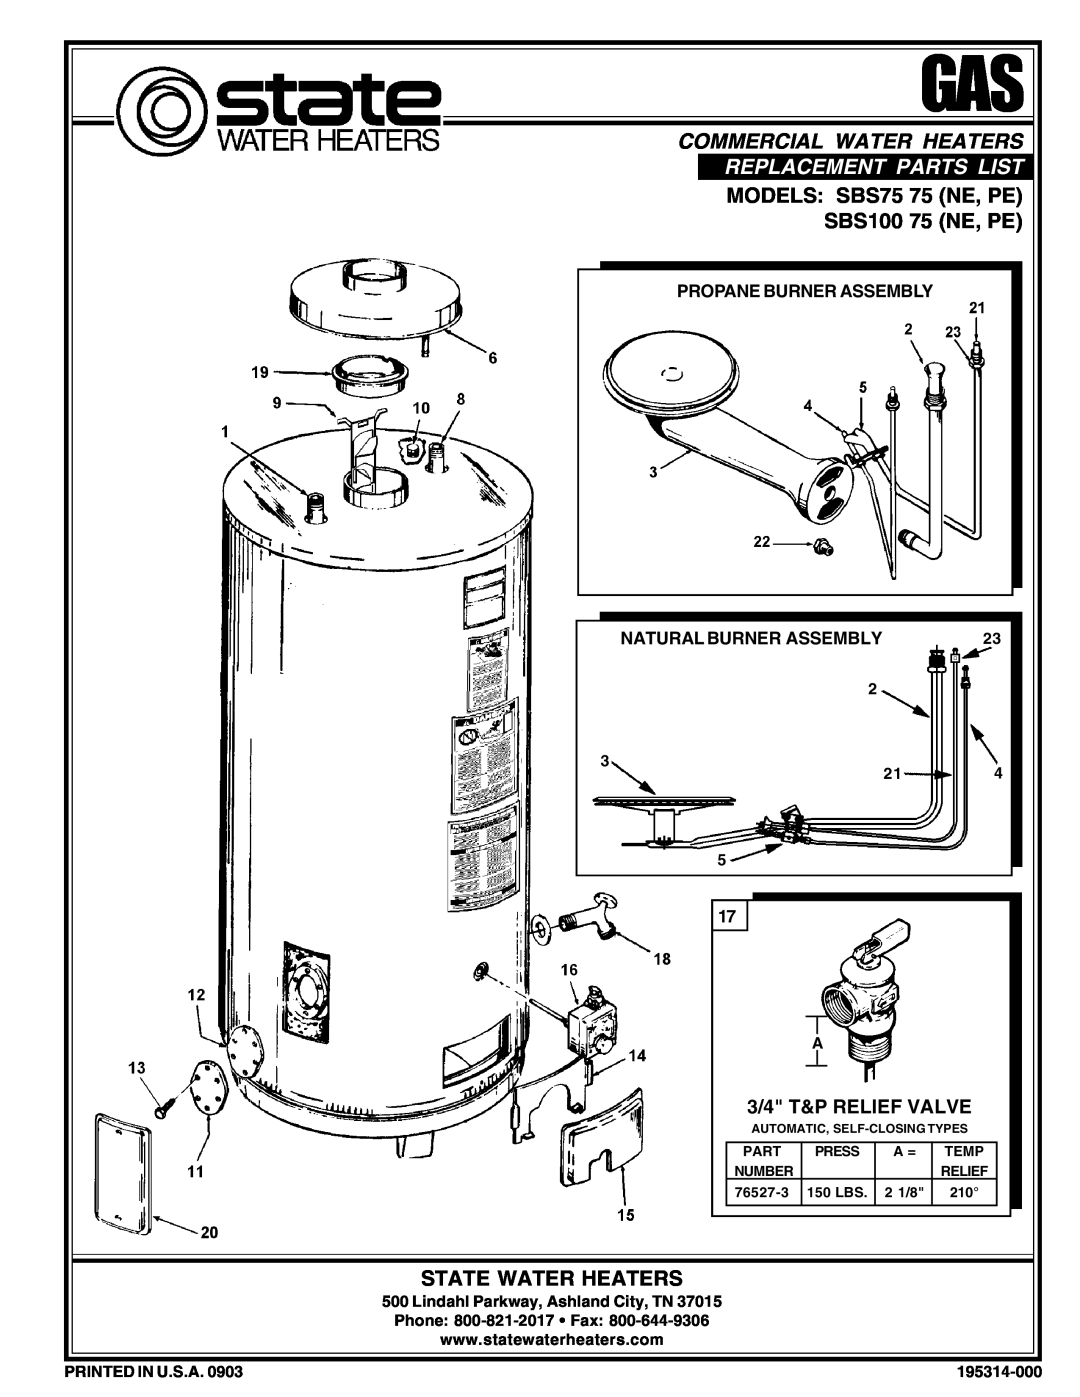 State Industries manual MODELS SBS75 75 NE, PE SBS100 75 NE, PE, State Water Heaters, Commercial Water Heaters, Part 